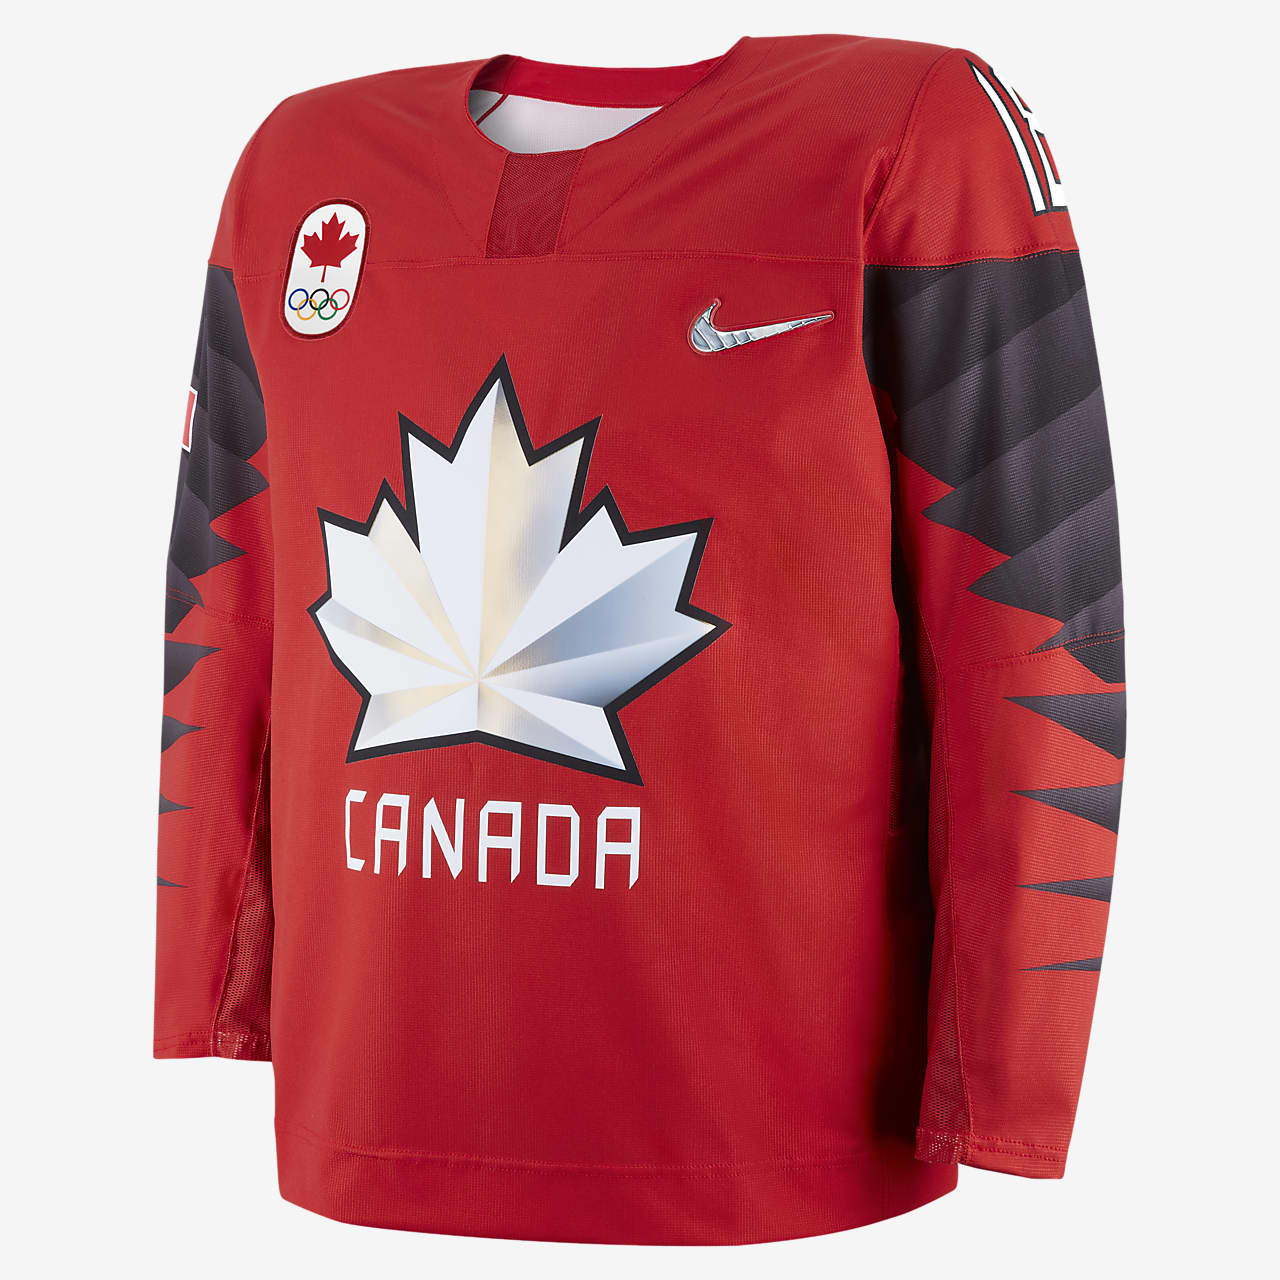 Gedragen schokkend creëren Nike Team Canada Replica Men's Hockey Jersey. Nike.com